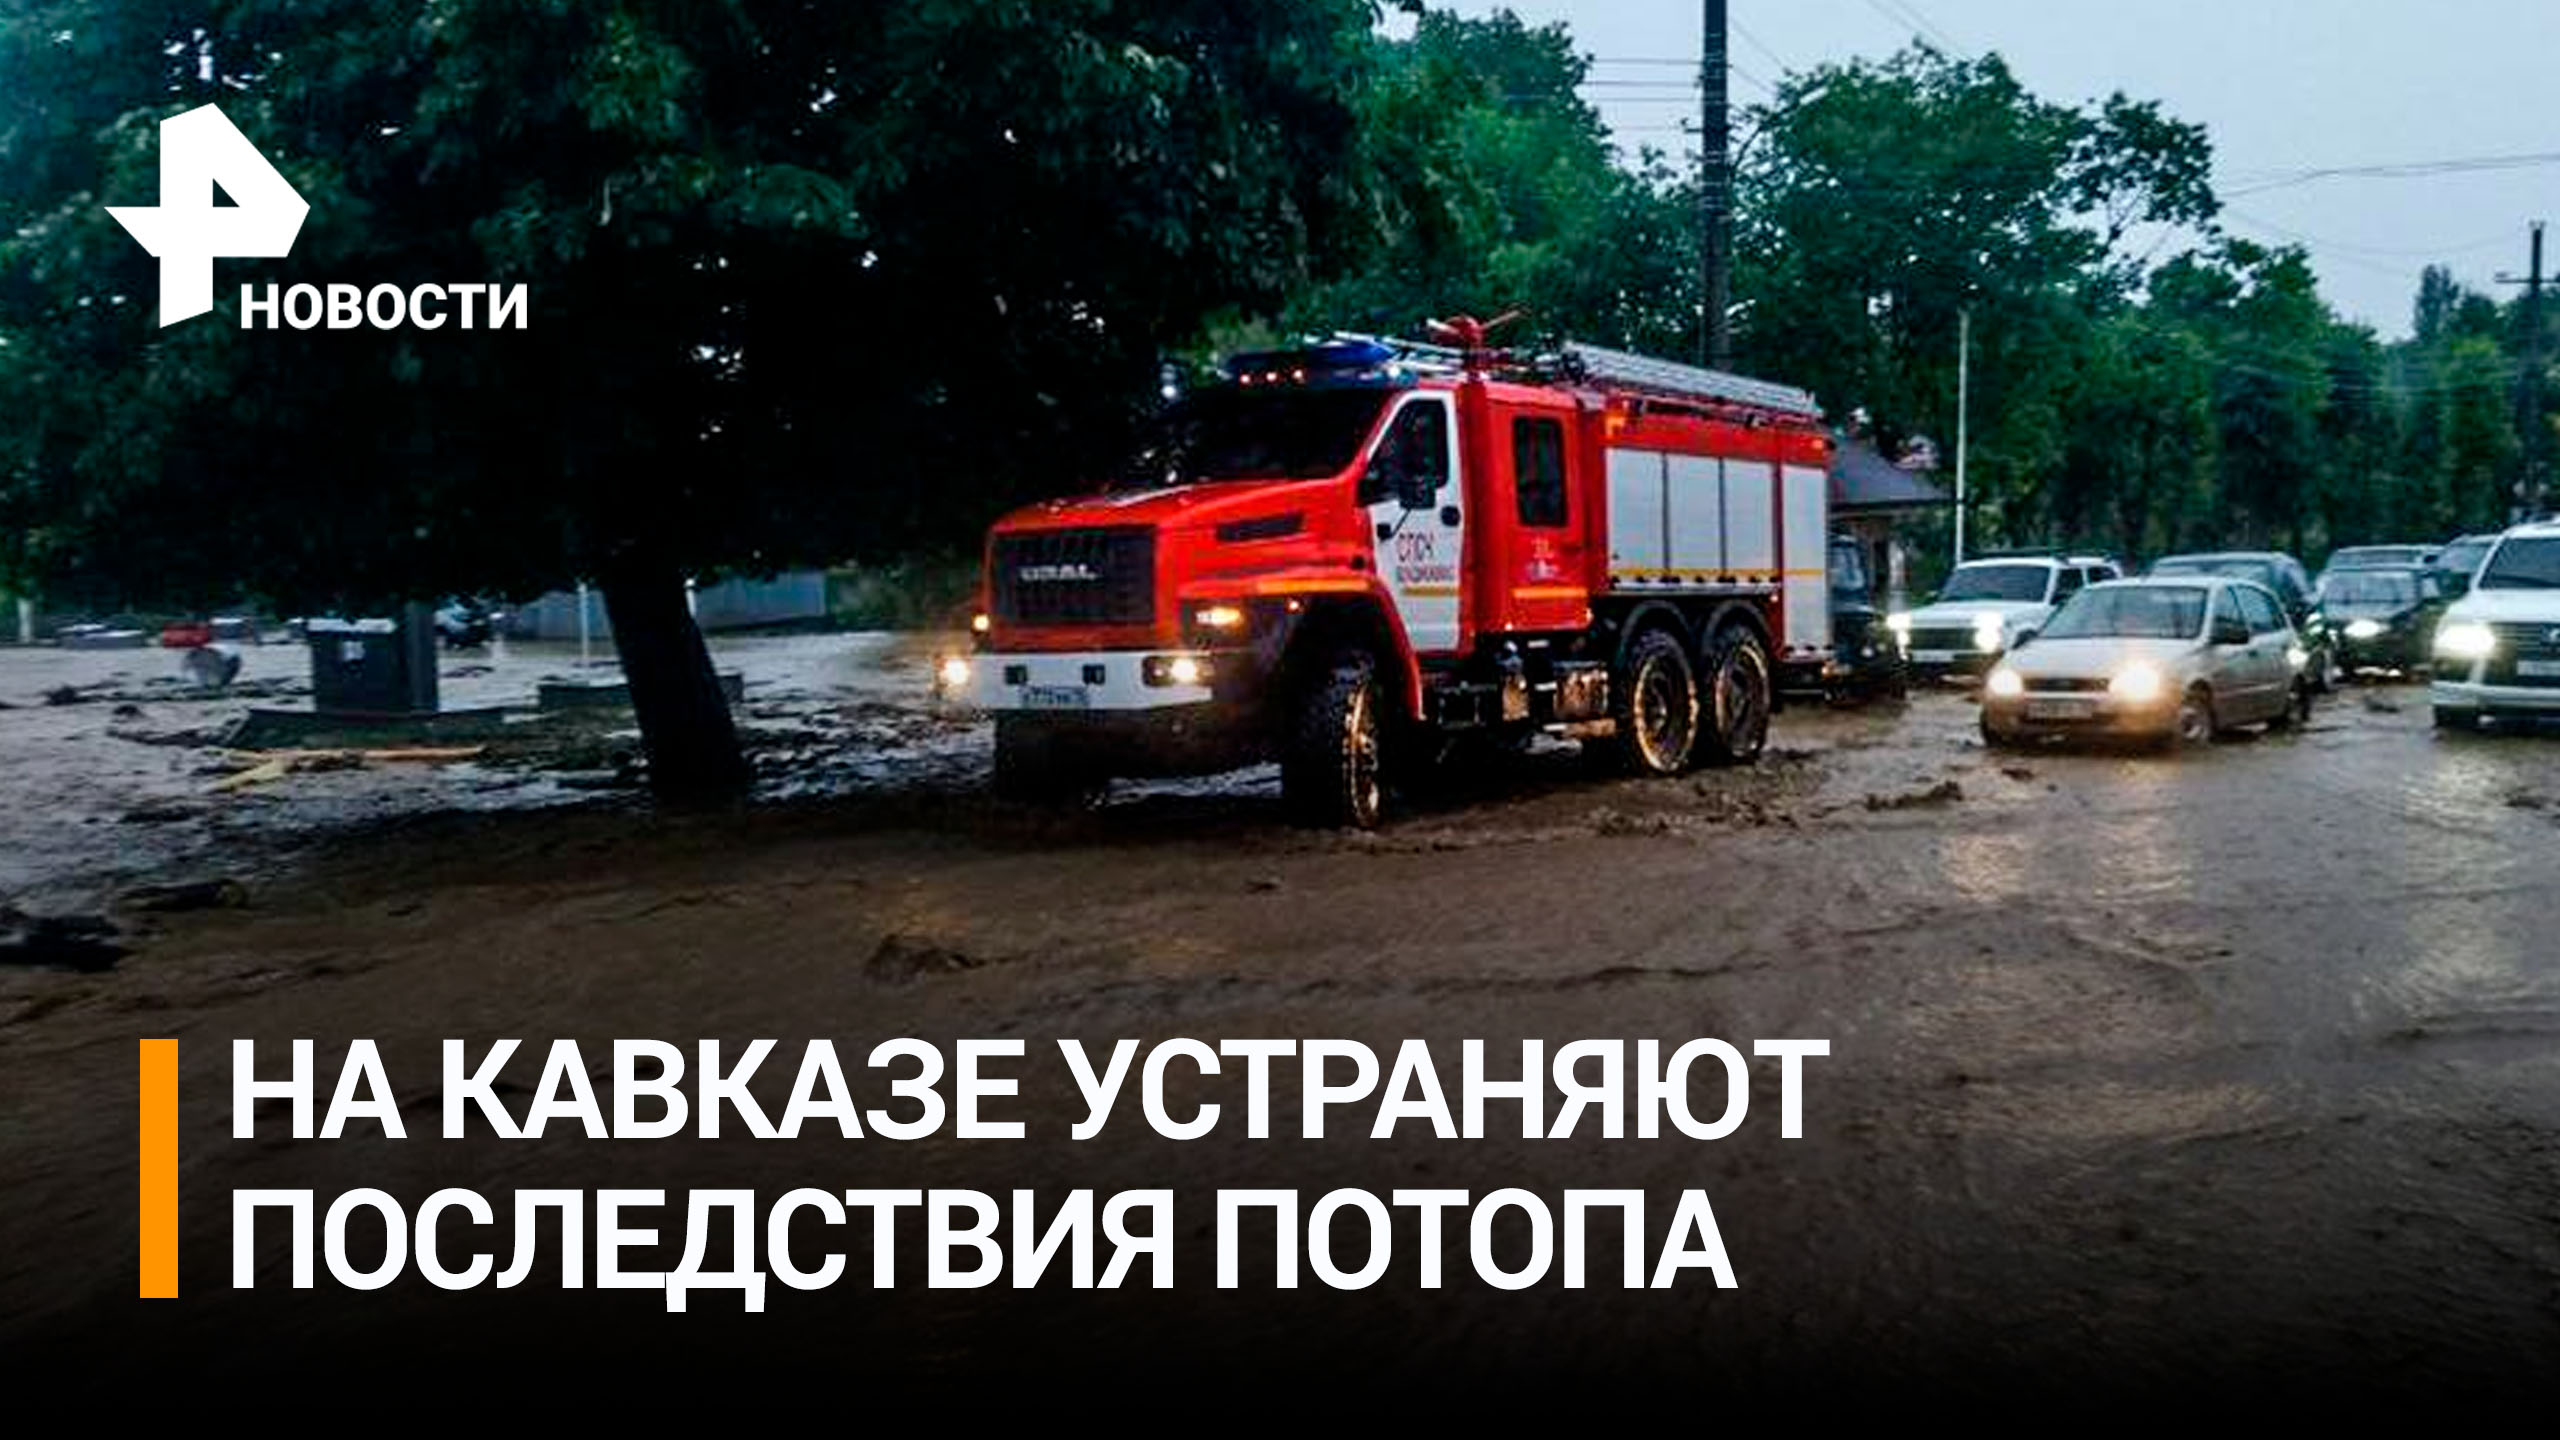 Лужи такие, что в них проваливаются машины: последствия рекордных ливней устраняют в Северной Осетии